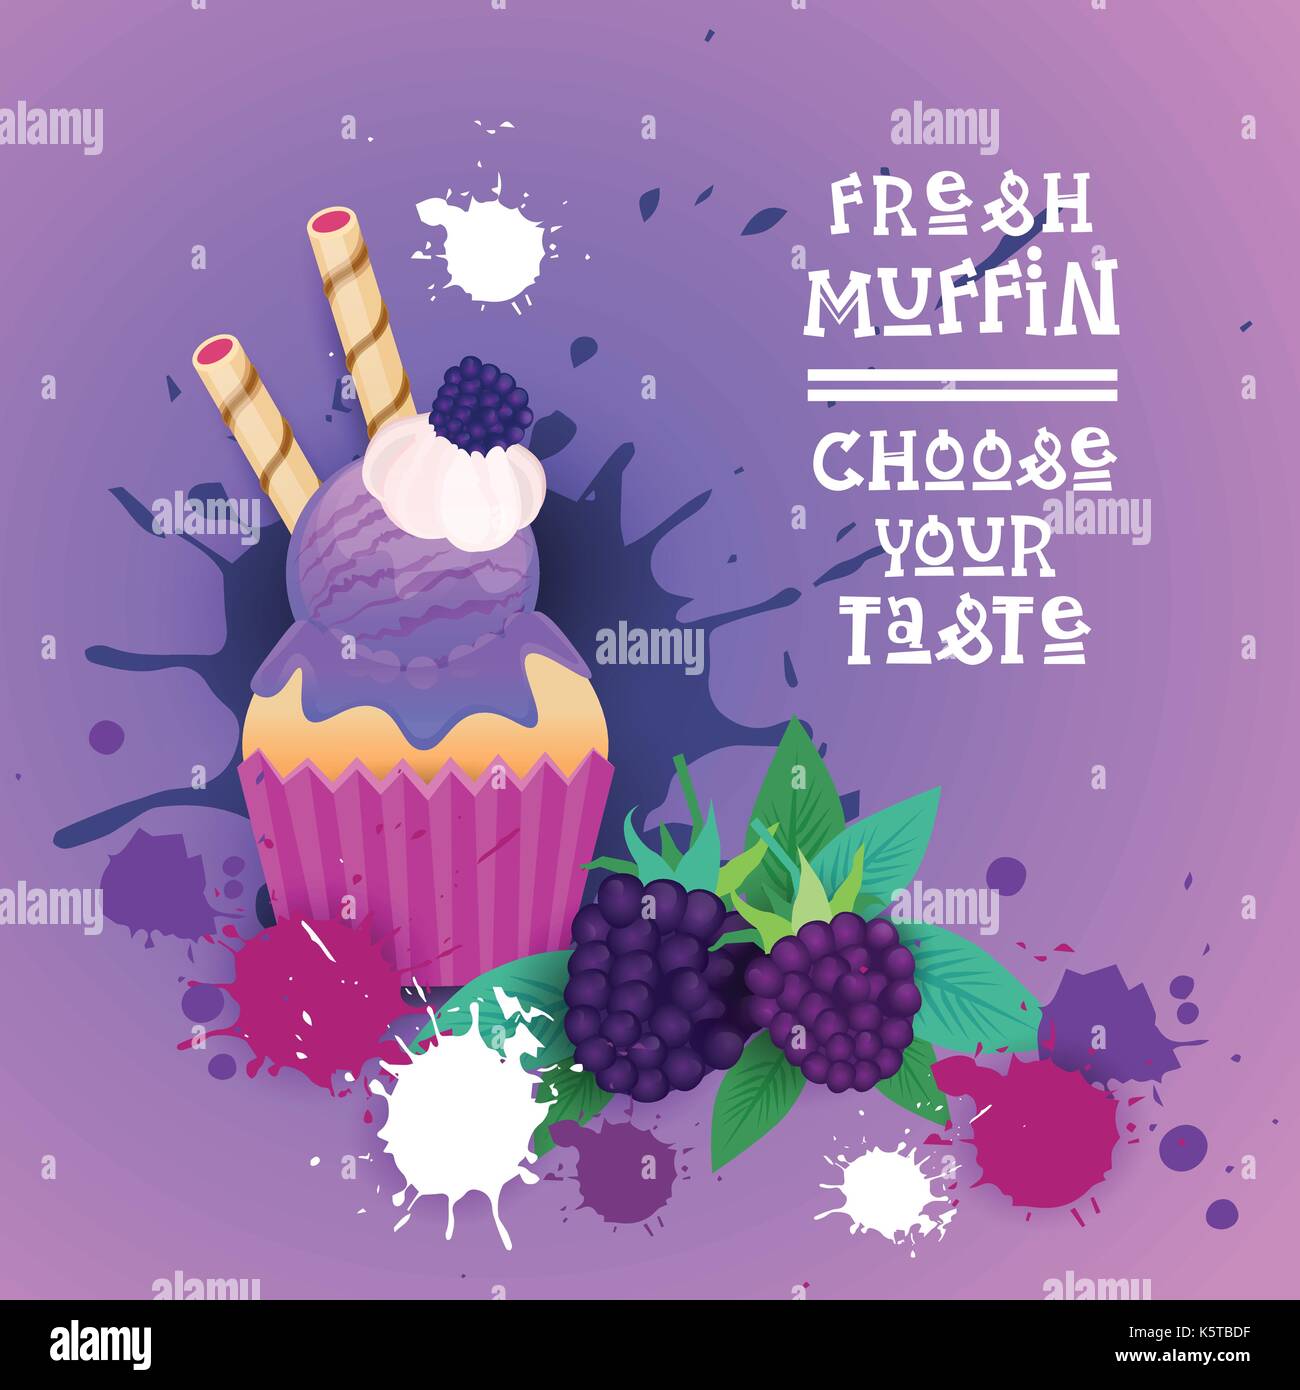 Muffin frais choisissez votre logo goût sucré gâteau délicieux dessert cupcake magnifique Illustration de Vecteur